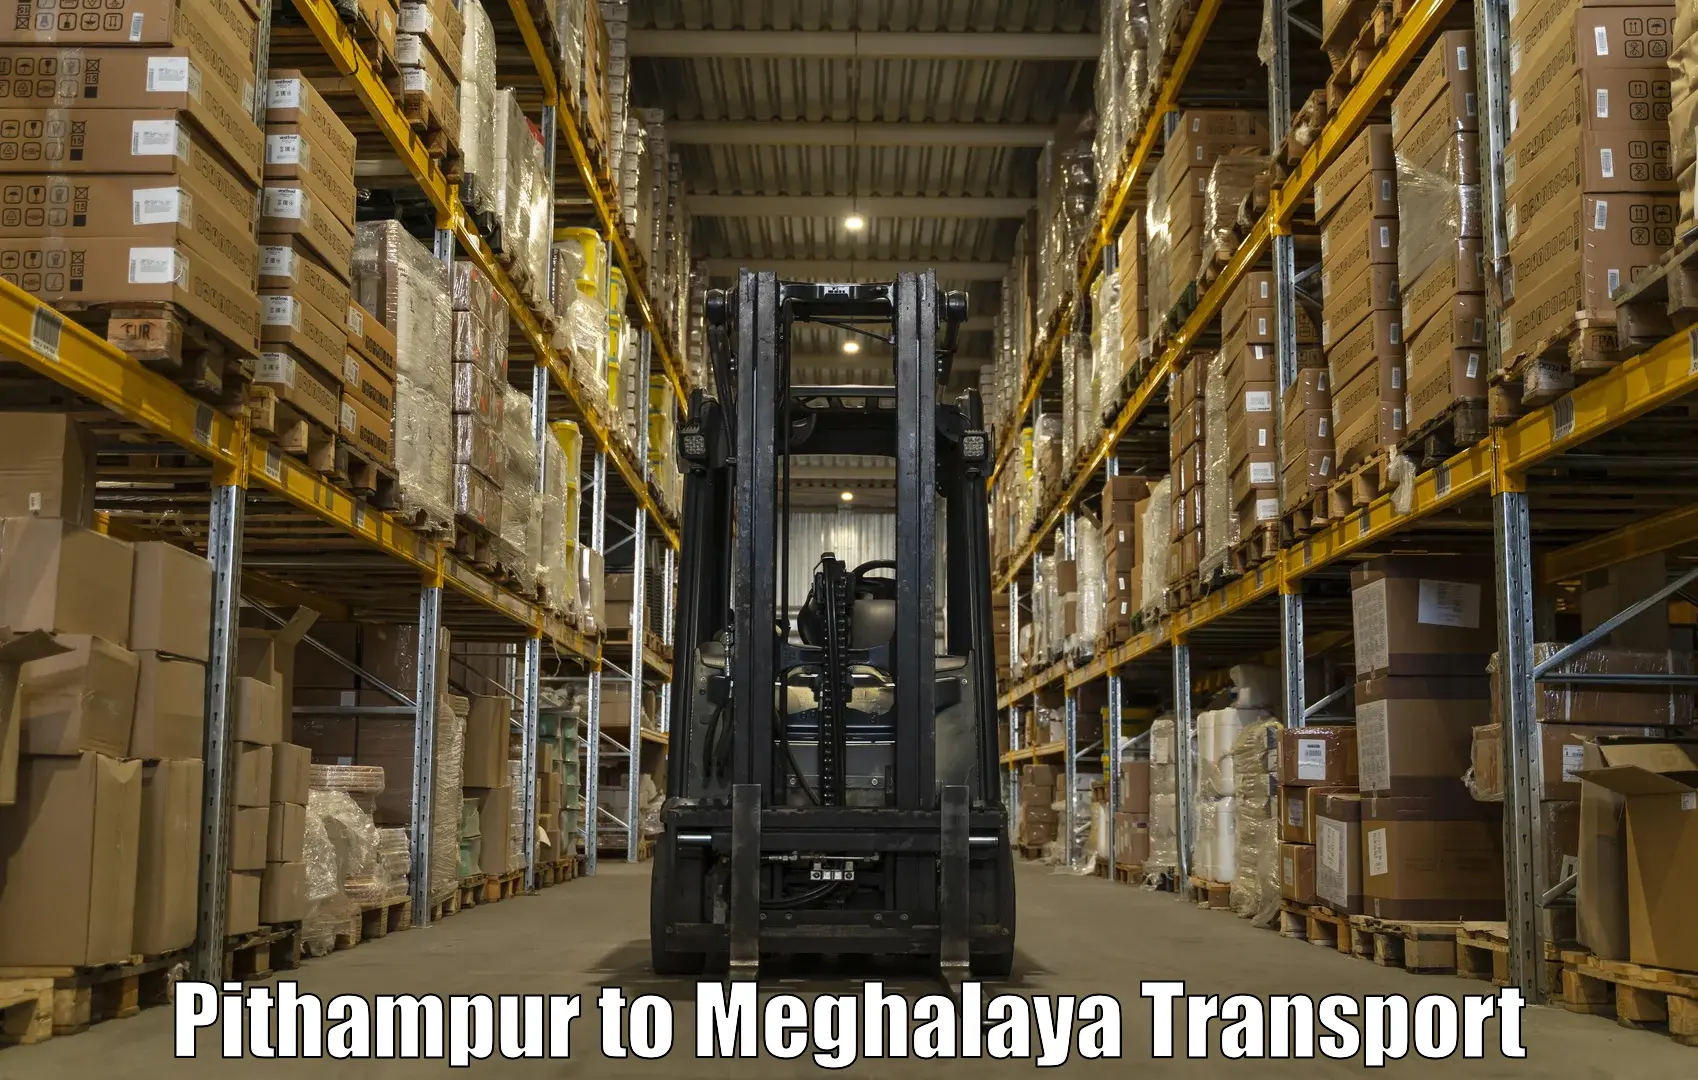 Shipping partner Pithampur to Meghalaya